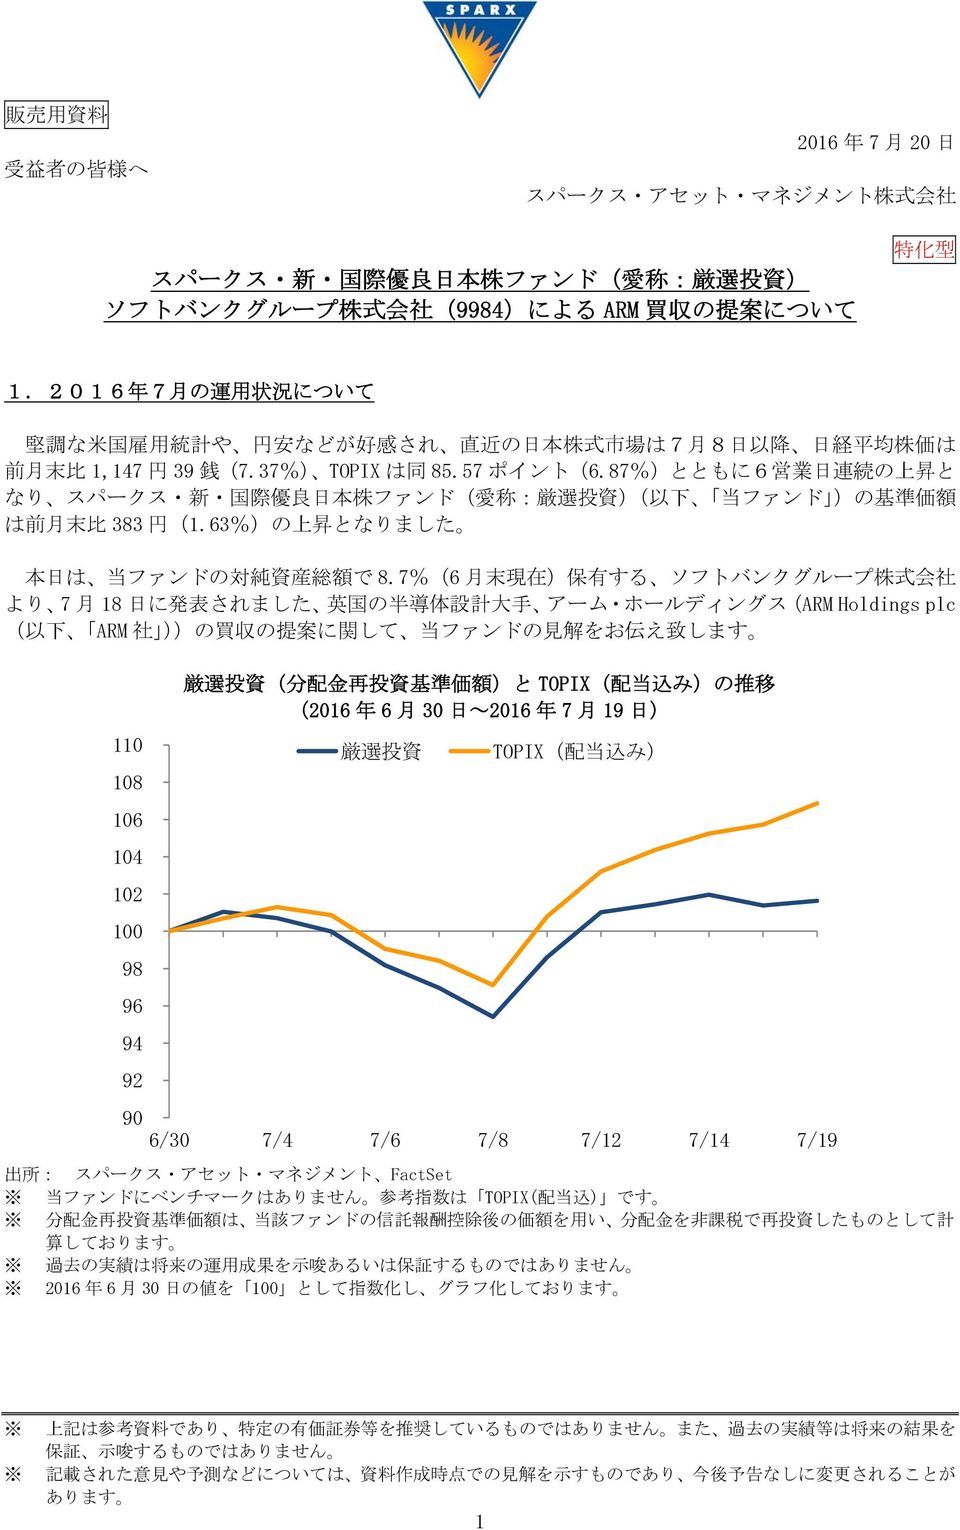 87%)とともに6 営 業 日 連 続 の 上 昇 と なり スパークス 新 国 際 優 良 日 本 株 ファンド( )( 以 下 当 ファンド )の 基 準 価 額 は 前 月 末 比 383 円 (1.63%)の 上 昇 となりました 本 日 は 当 ファンドの 対 純 資 産 総 額 で 8.